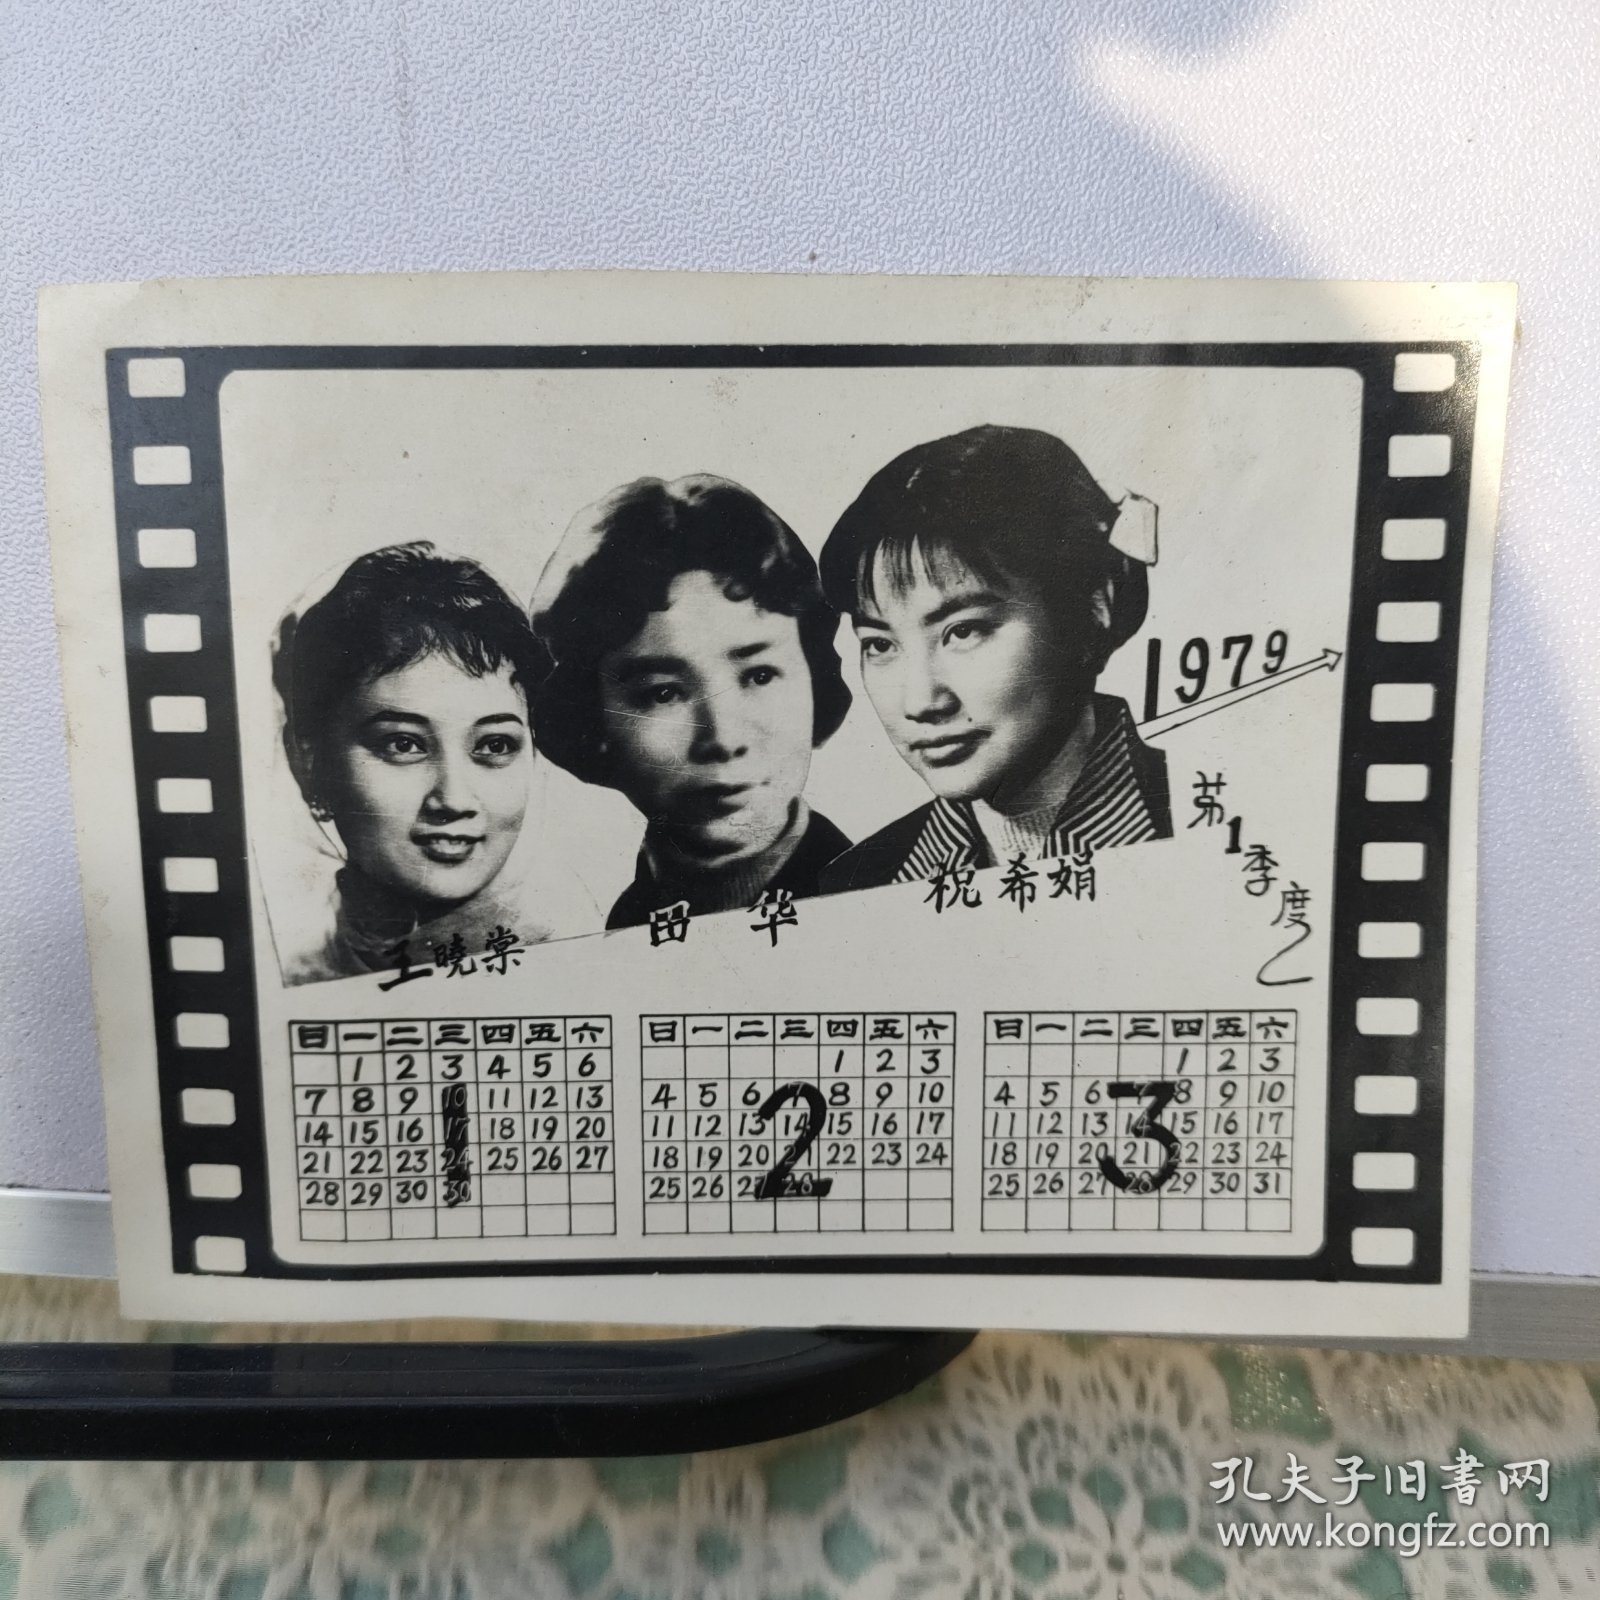 老照片 1979年年历——王晓棠、田华、祝希娟、 电影明星